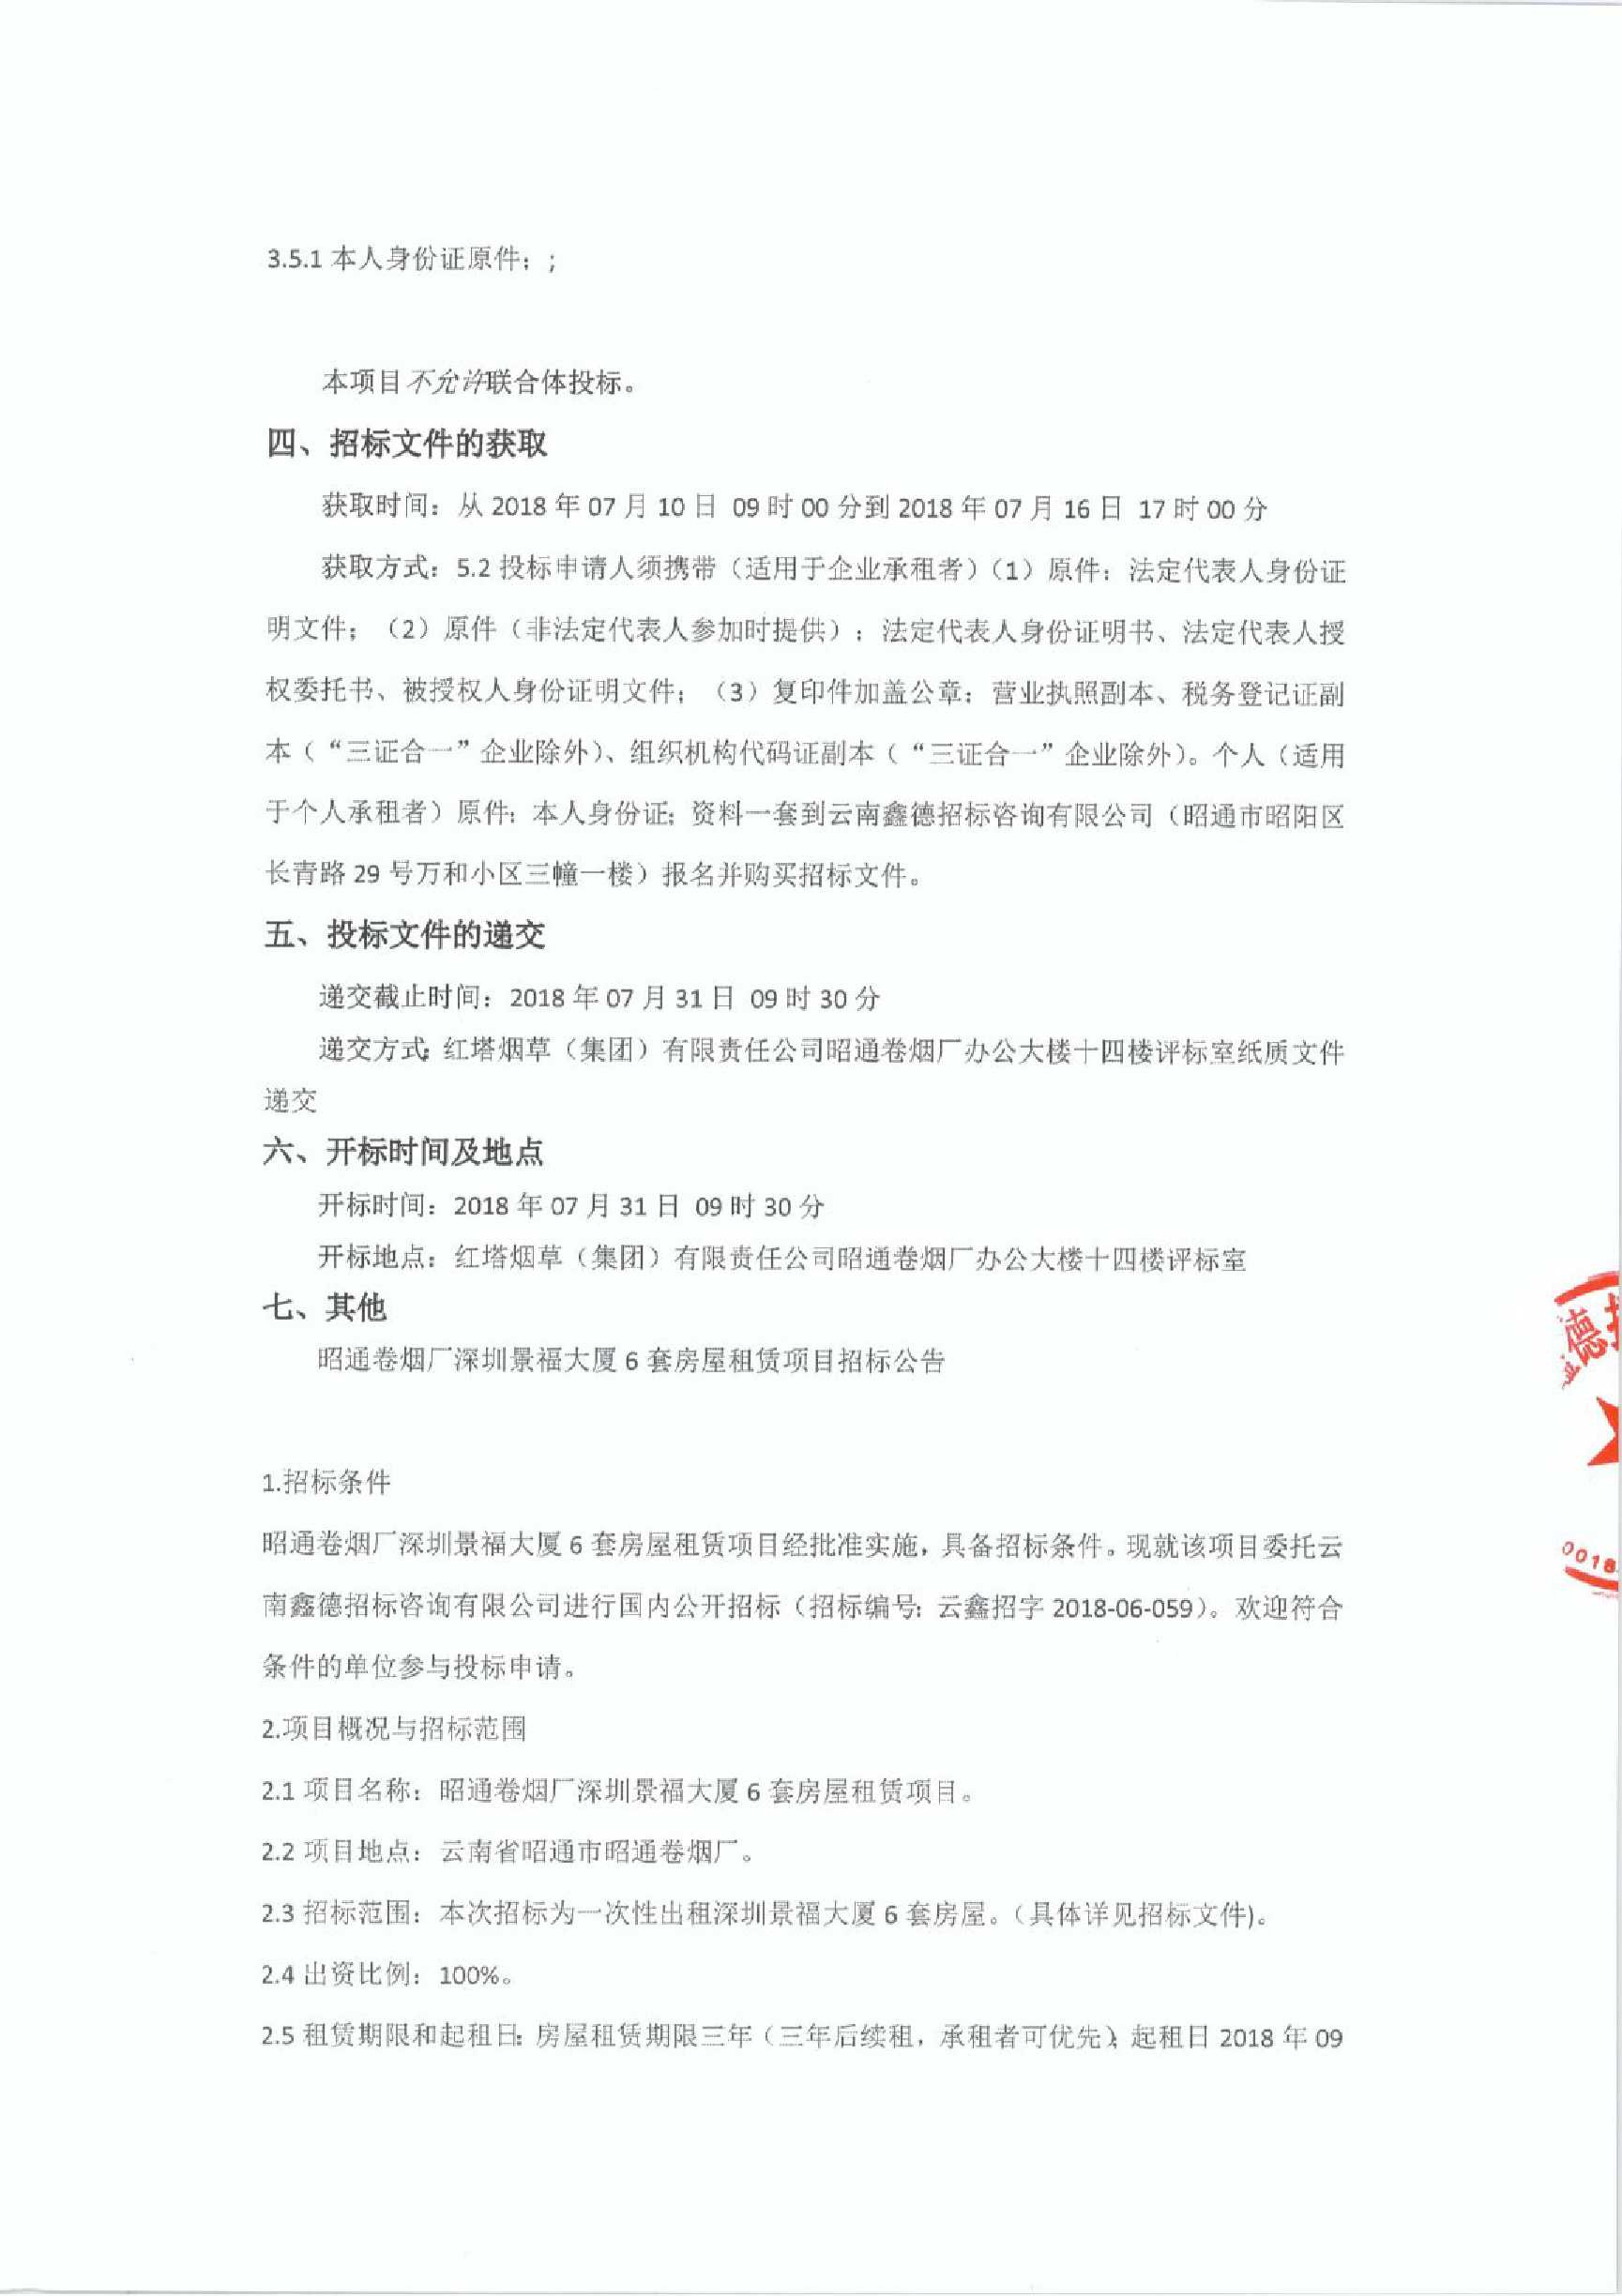 昭通卷烟厂深圳景福大厦6套房屋租赁项目招标公告